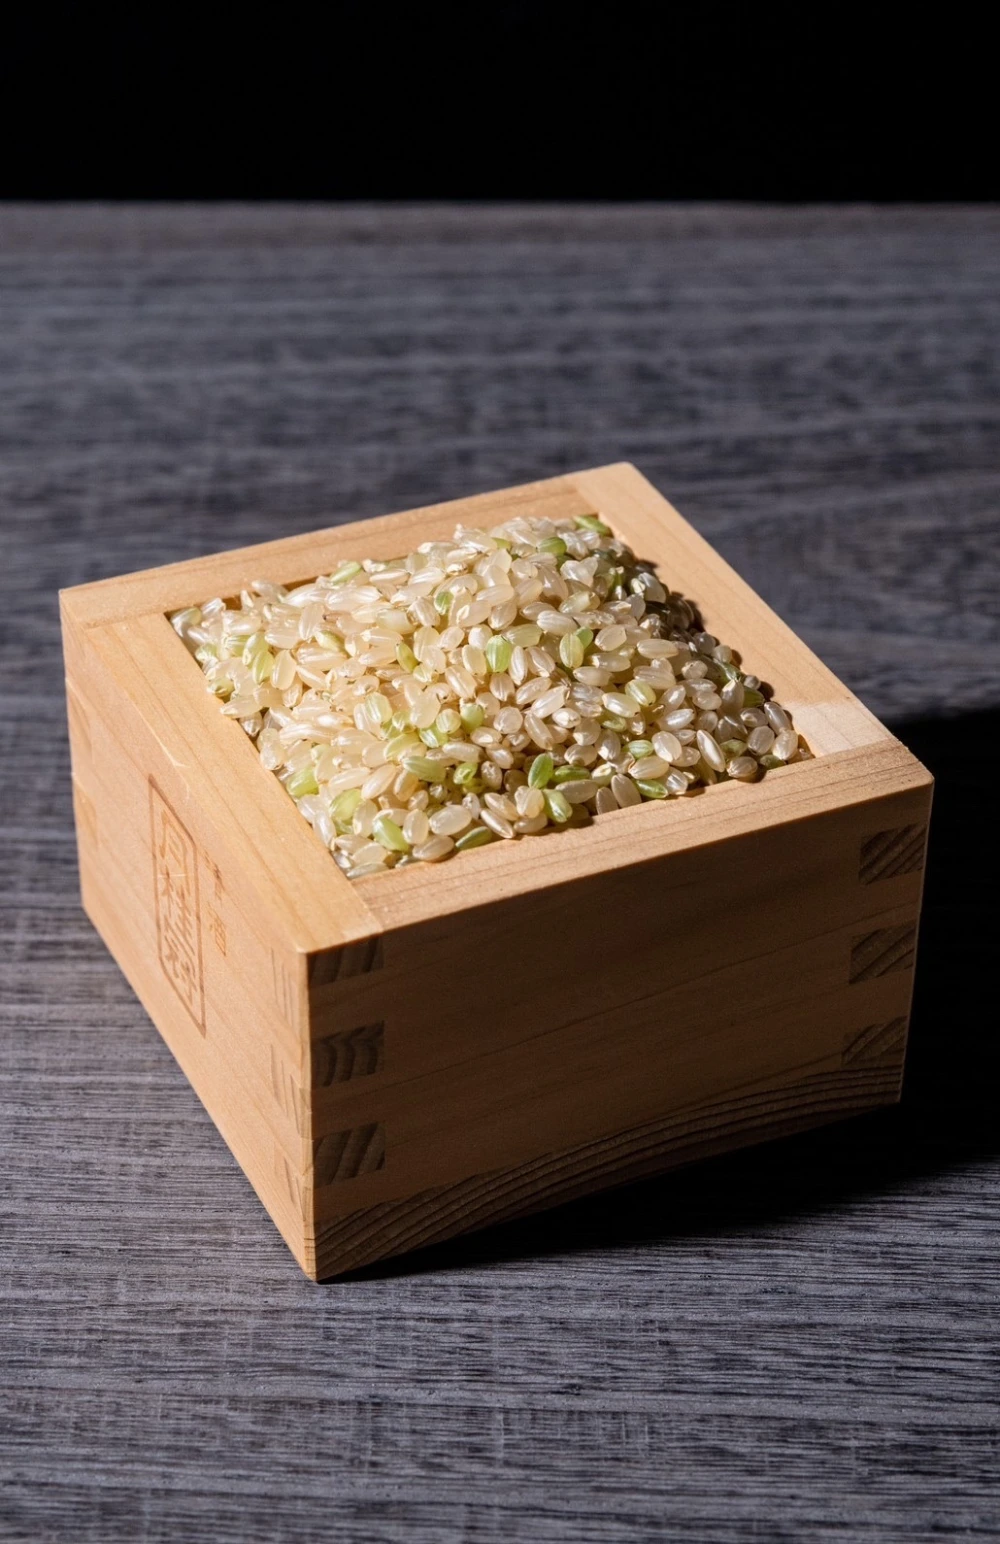 北海道産 特別栽培米(令和4年産)おぼろづき 玄米